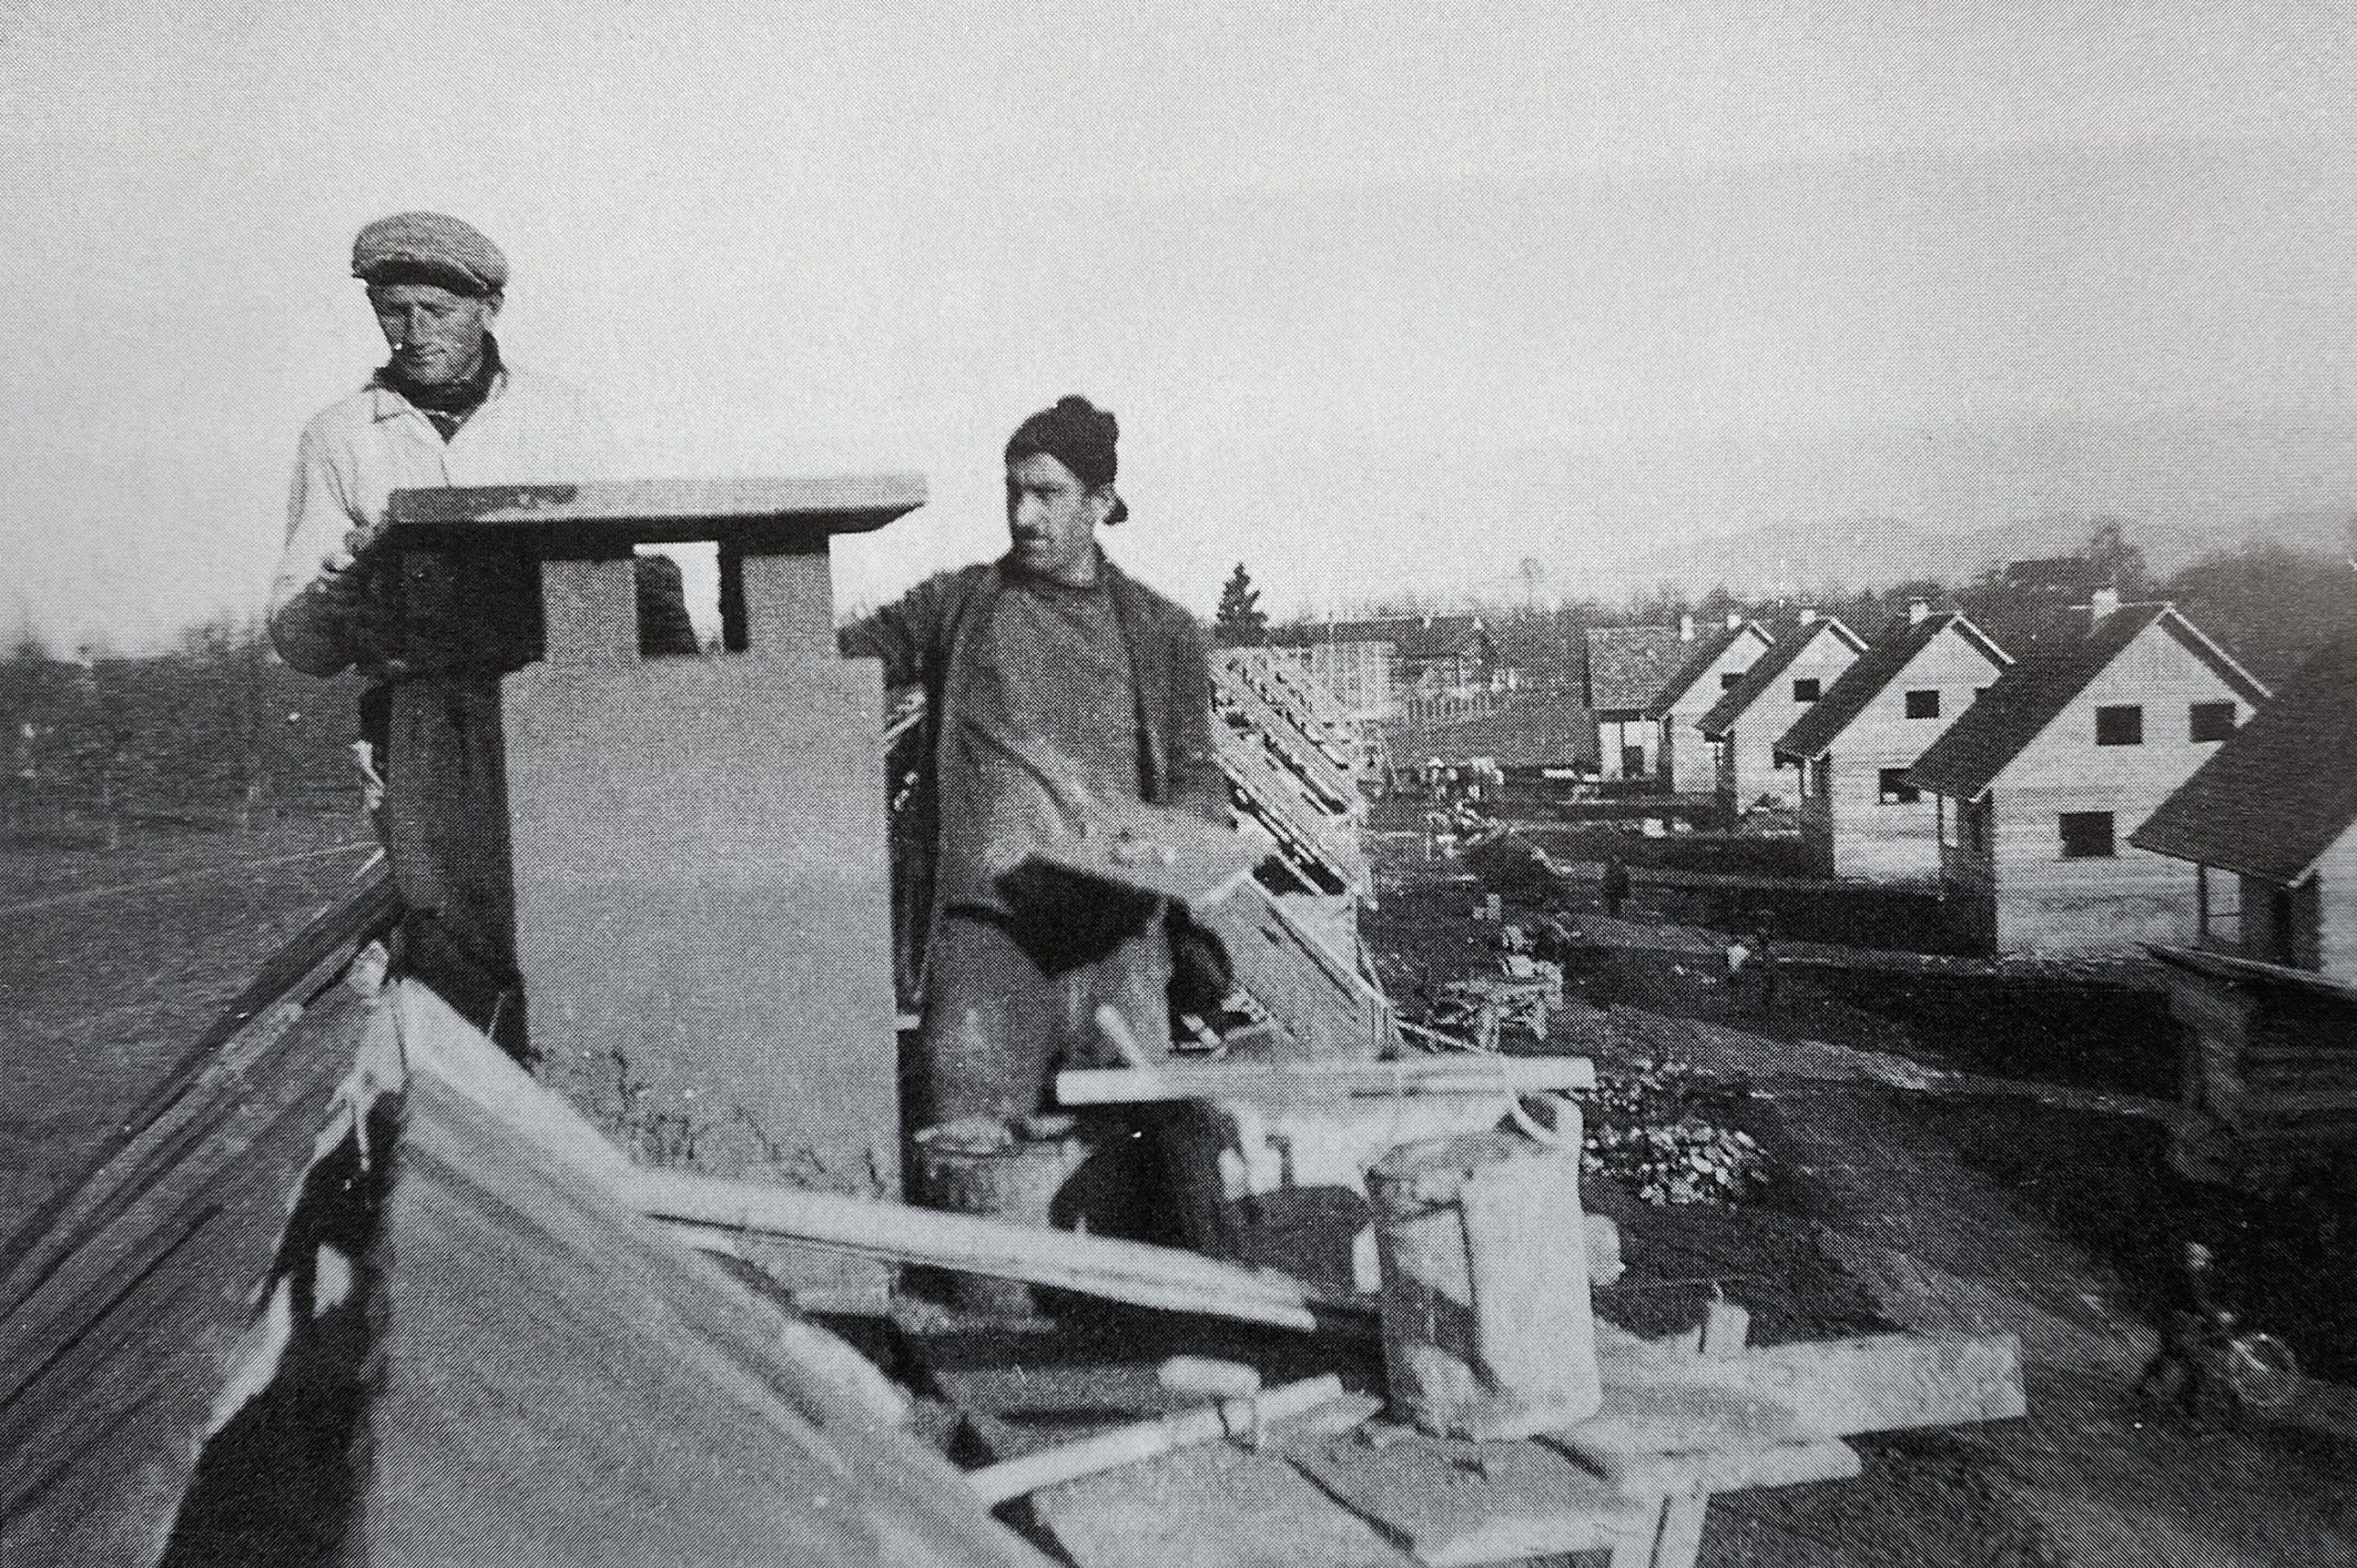 Siedlung im Riedle Dacharbeiten